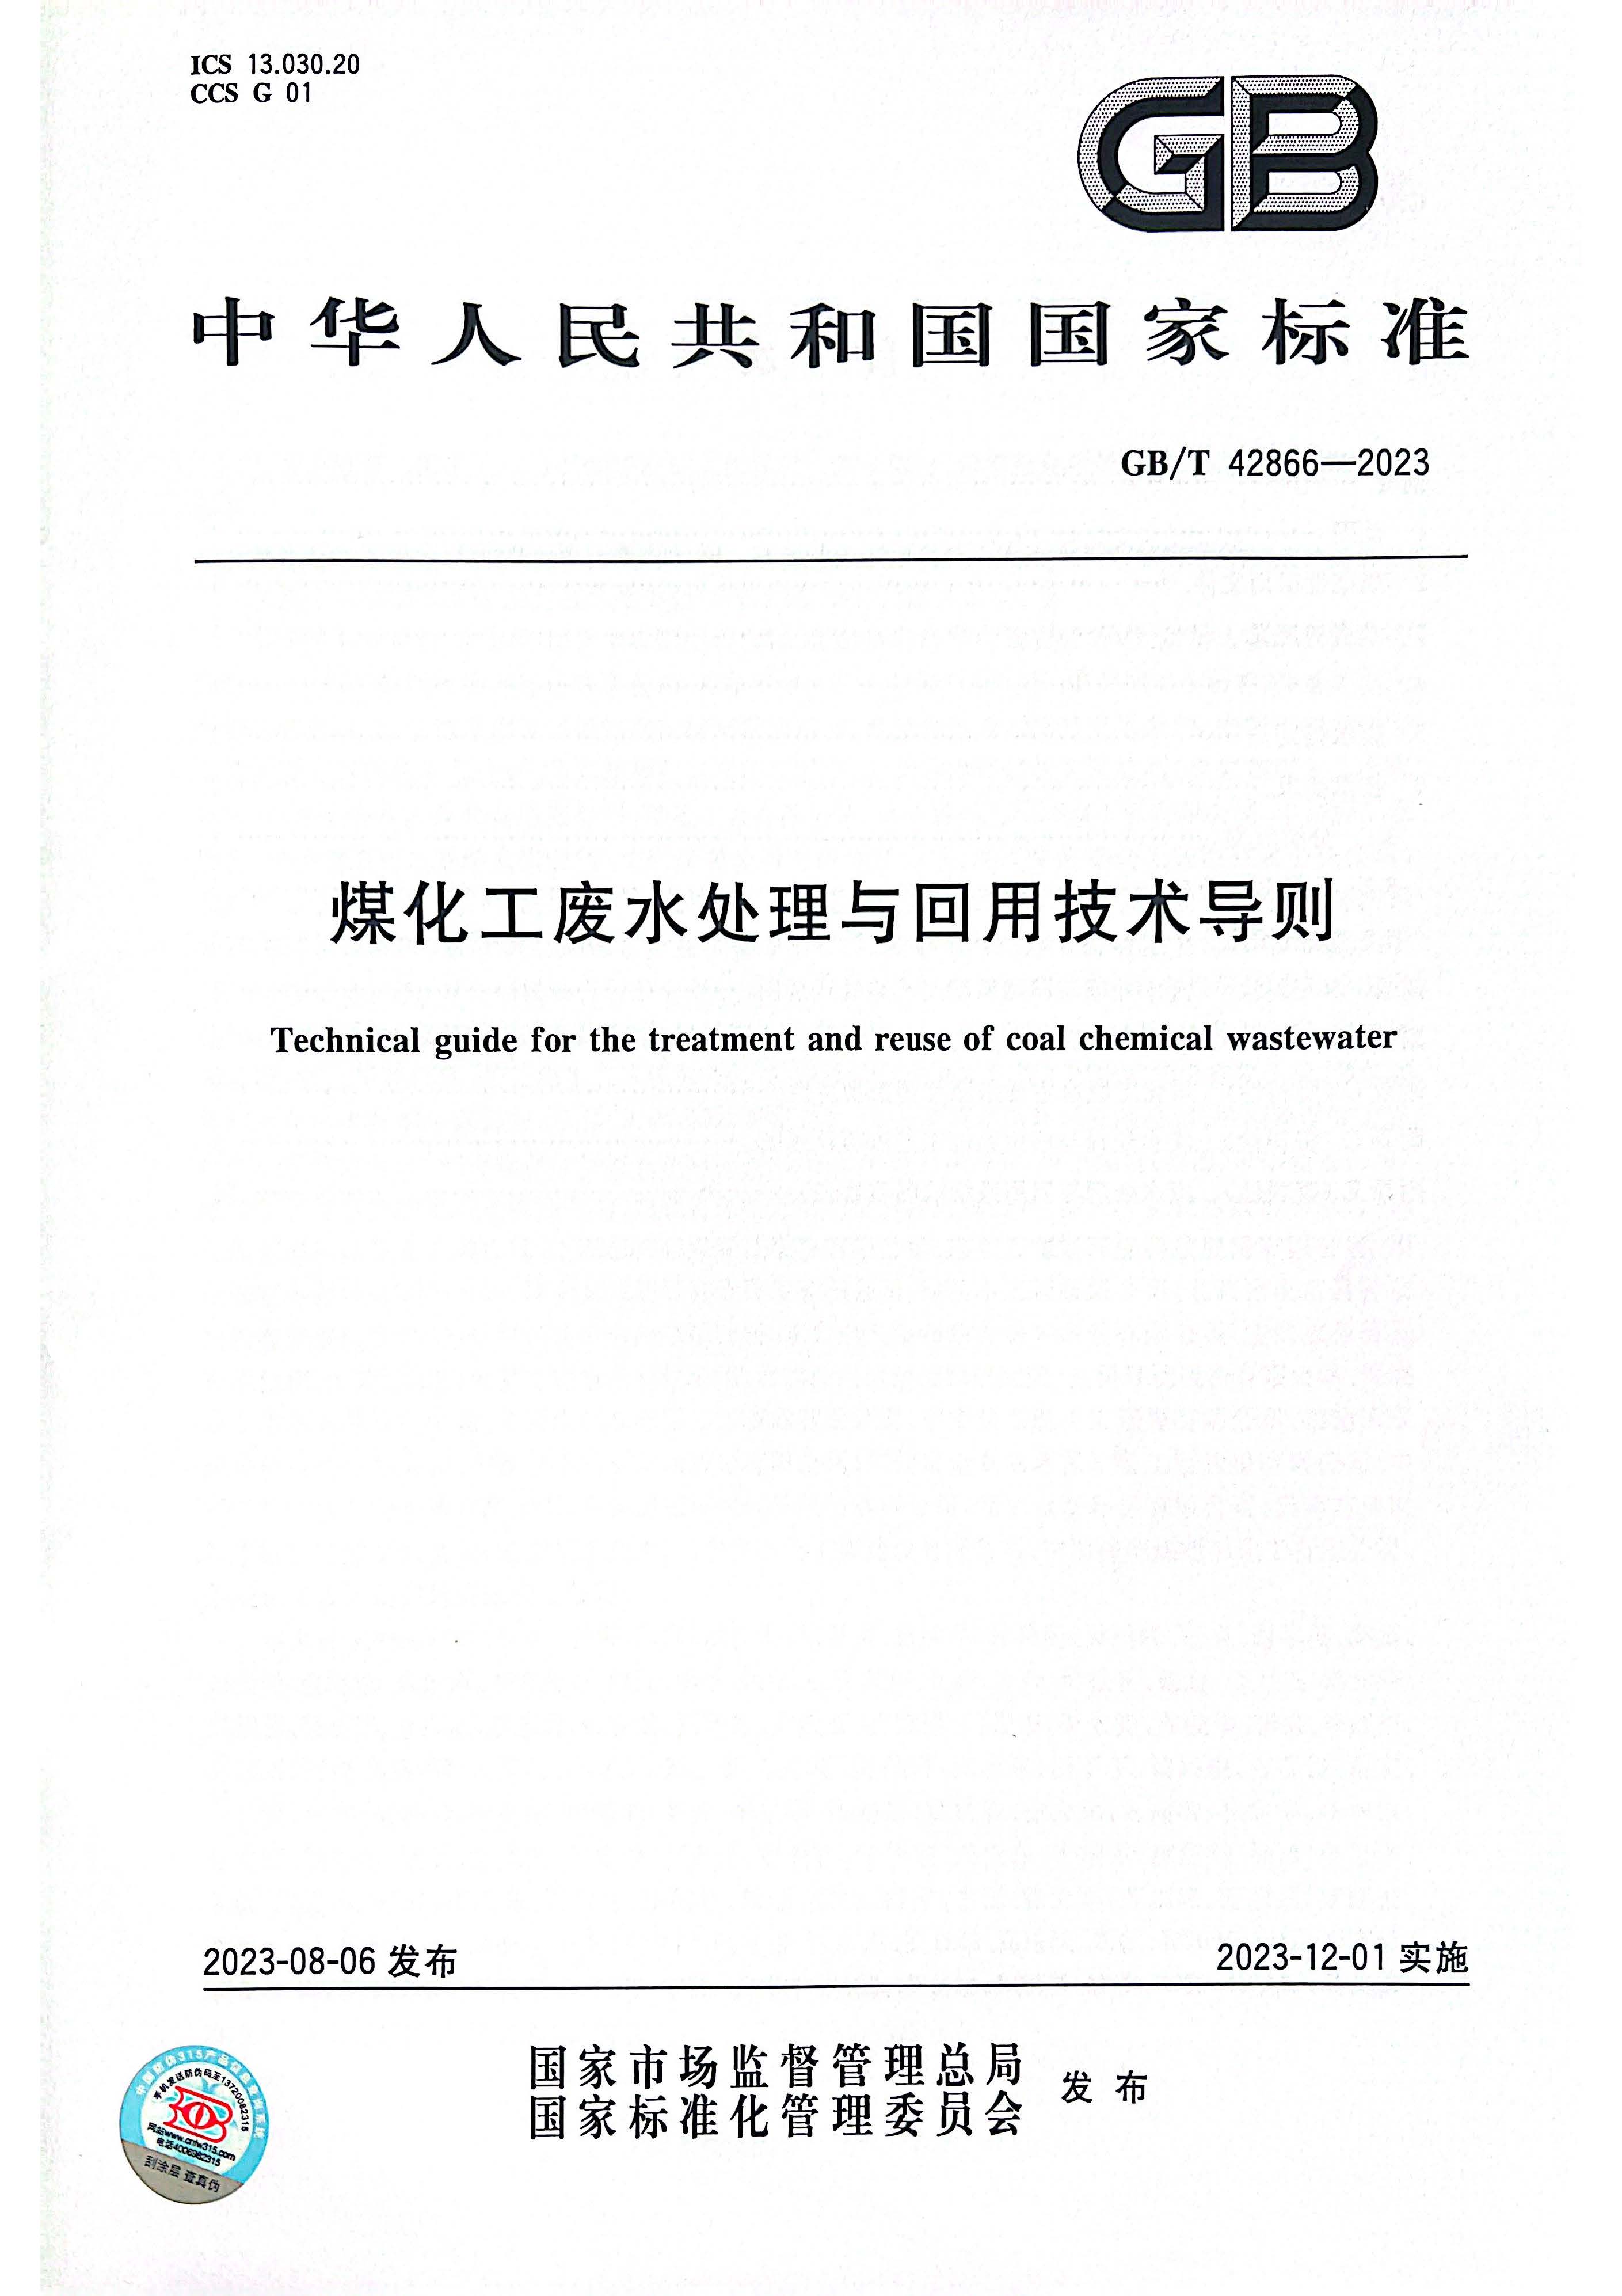 浙江国清环保  国家标准《煤化工废水处理与回用技术导则》正式发布